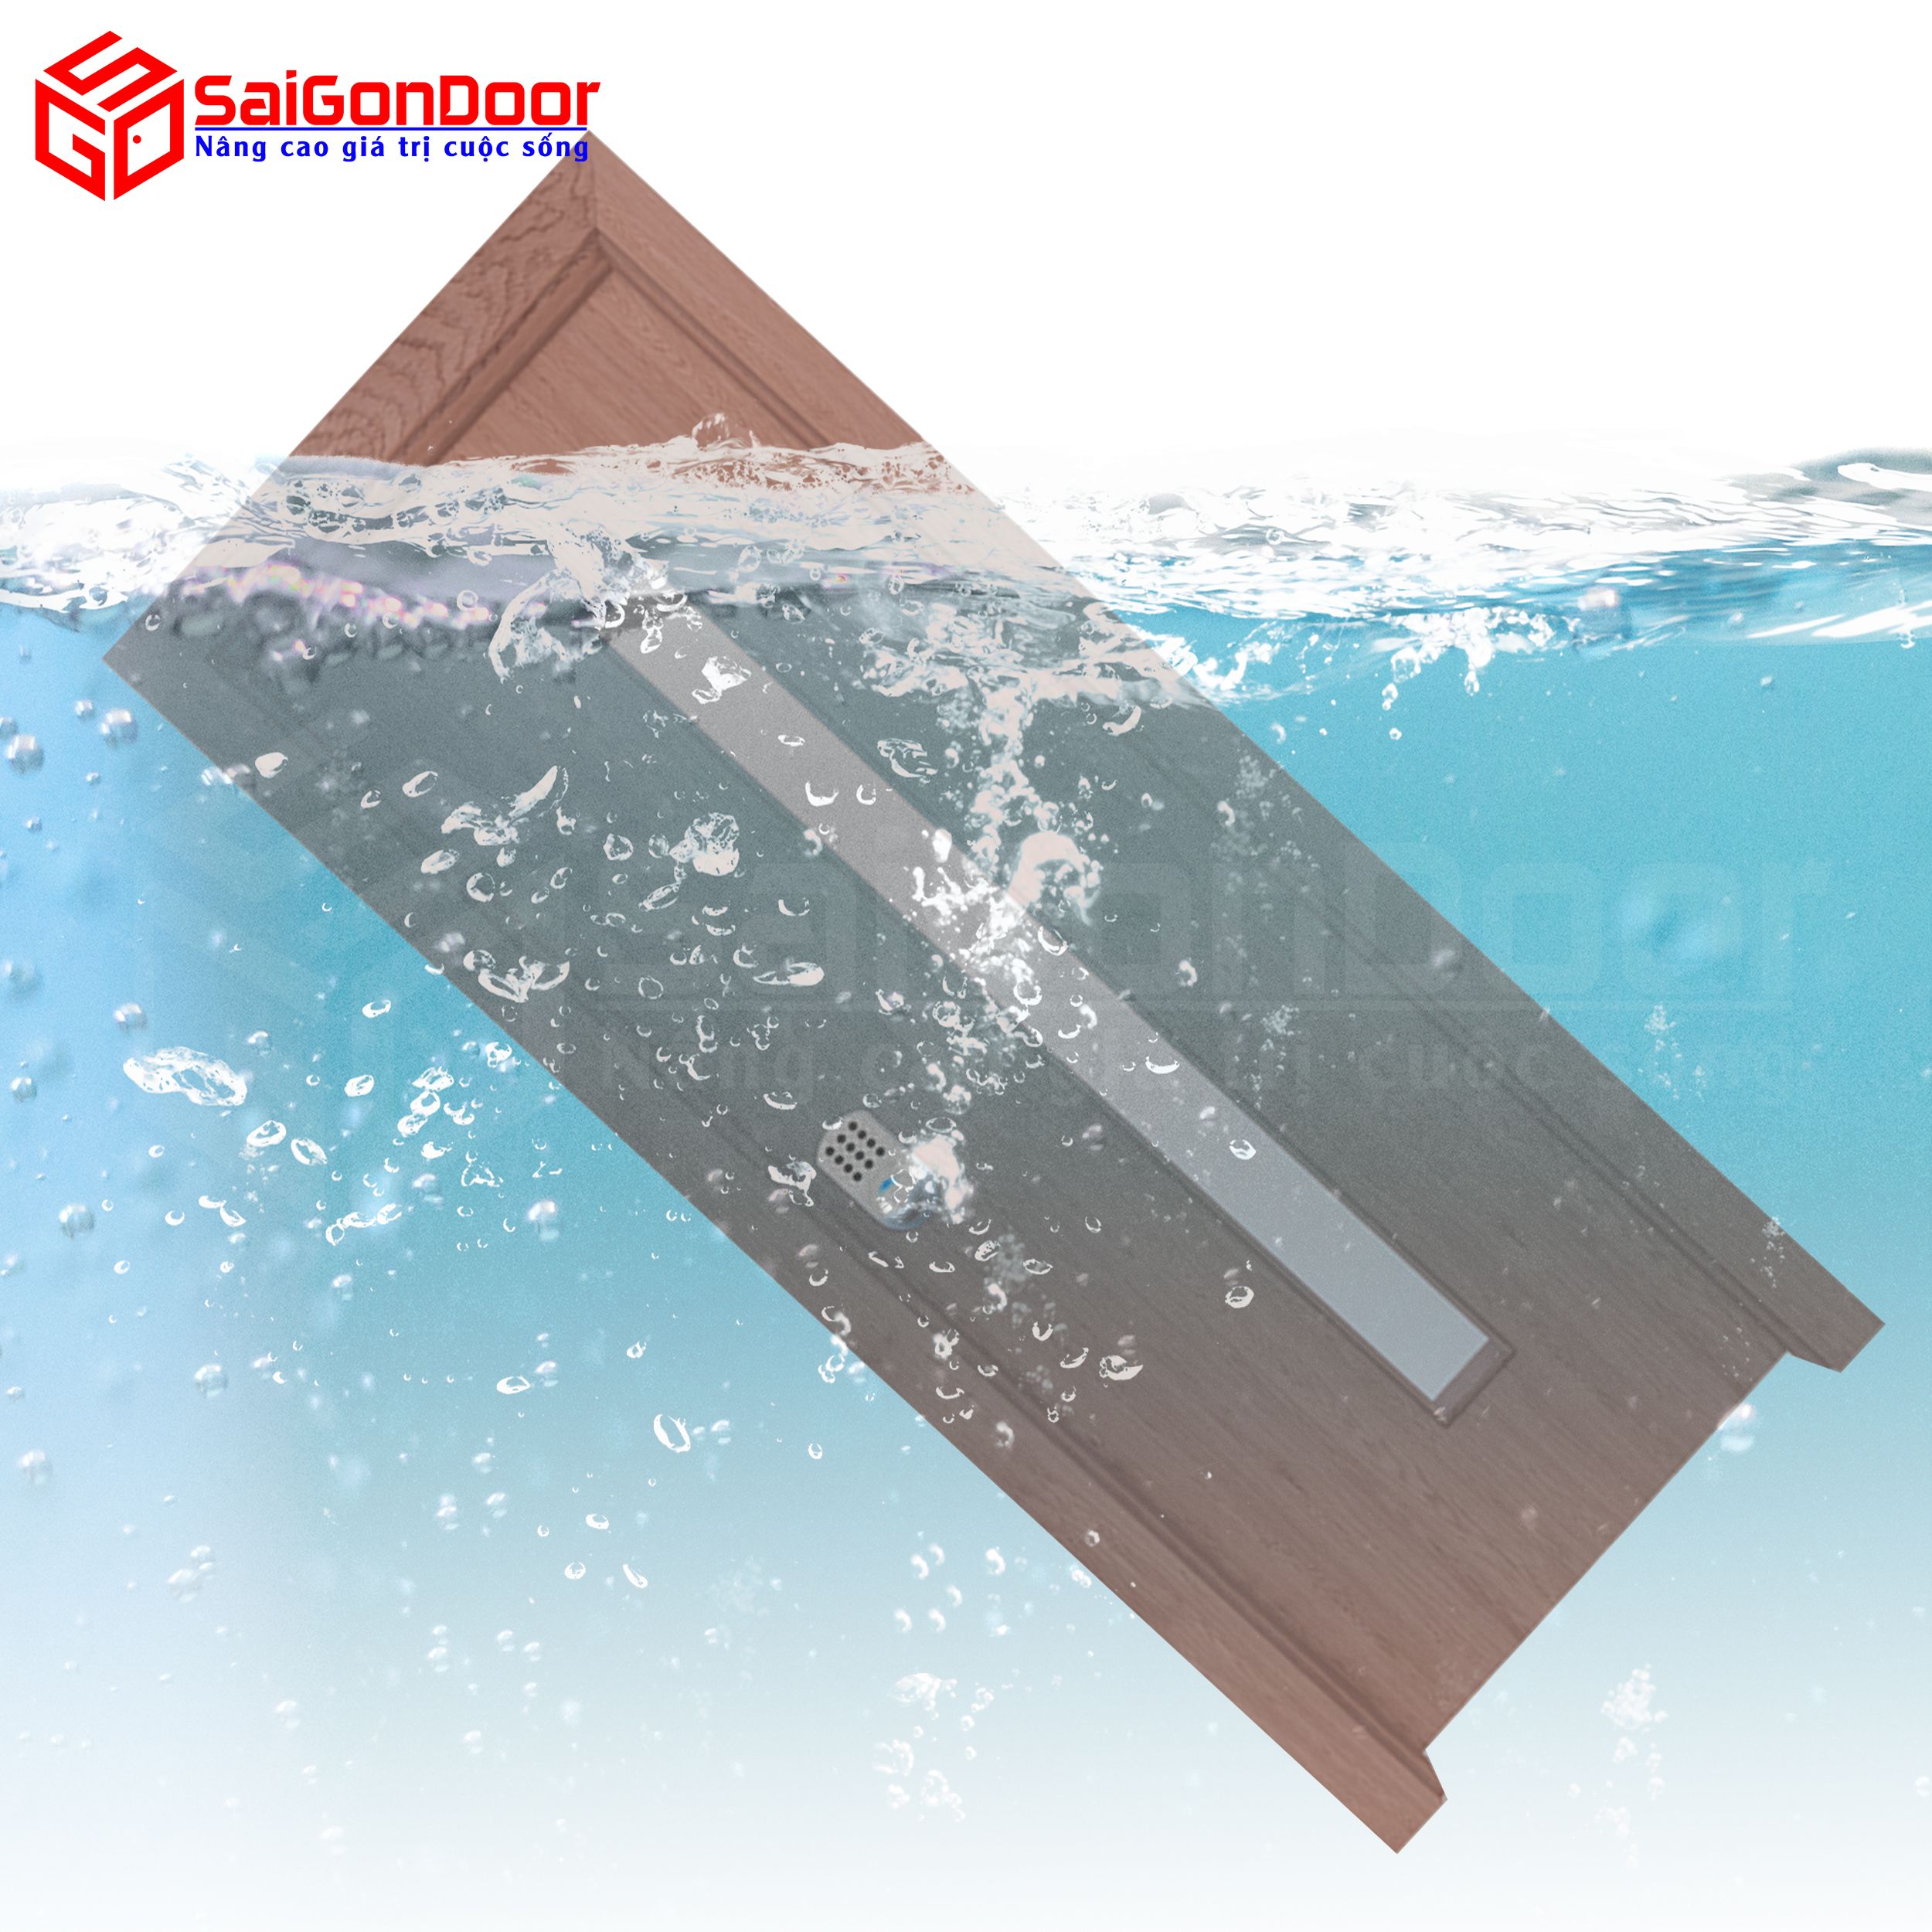 Cửa gỗ nhà tắm Composite cho khả năng chống nước tuyệt đối yên tam khi sử dụng trong nhà tắm